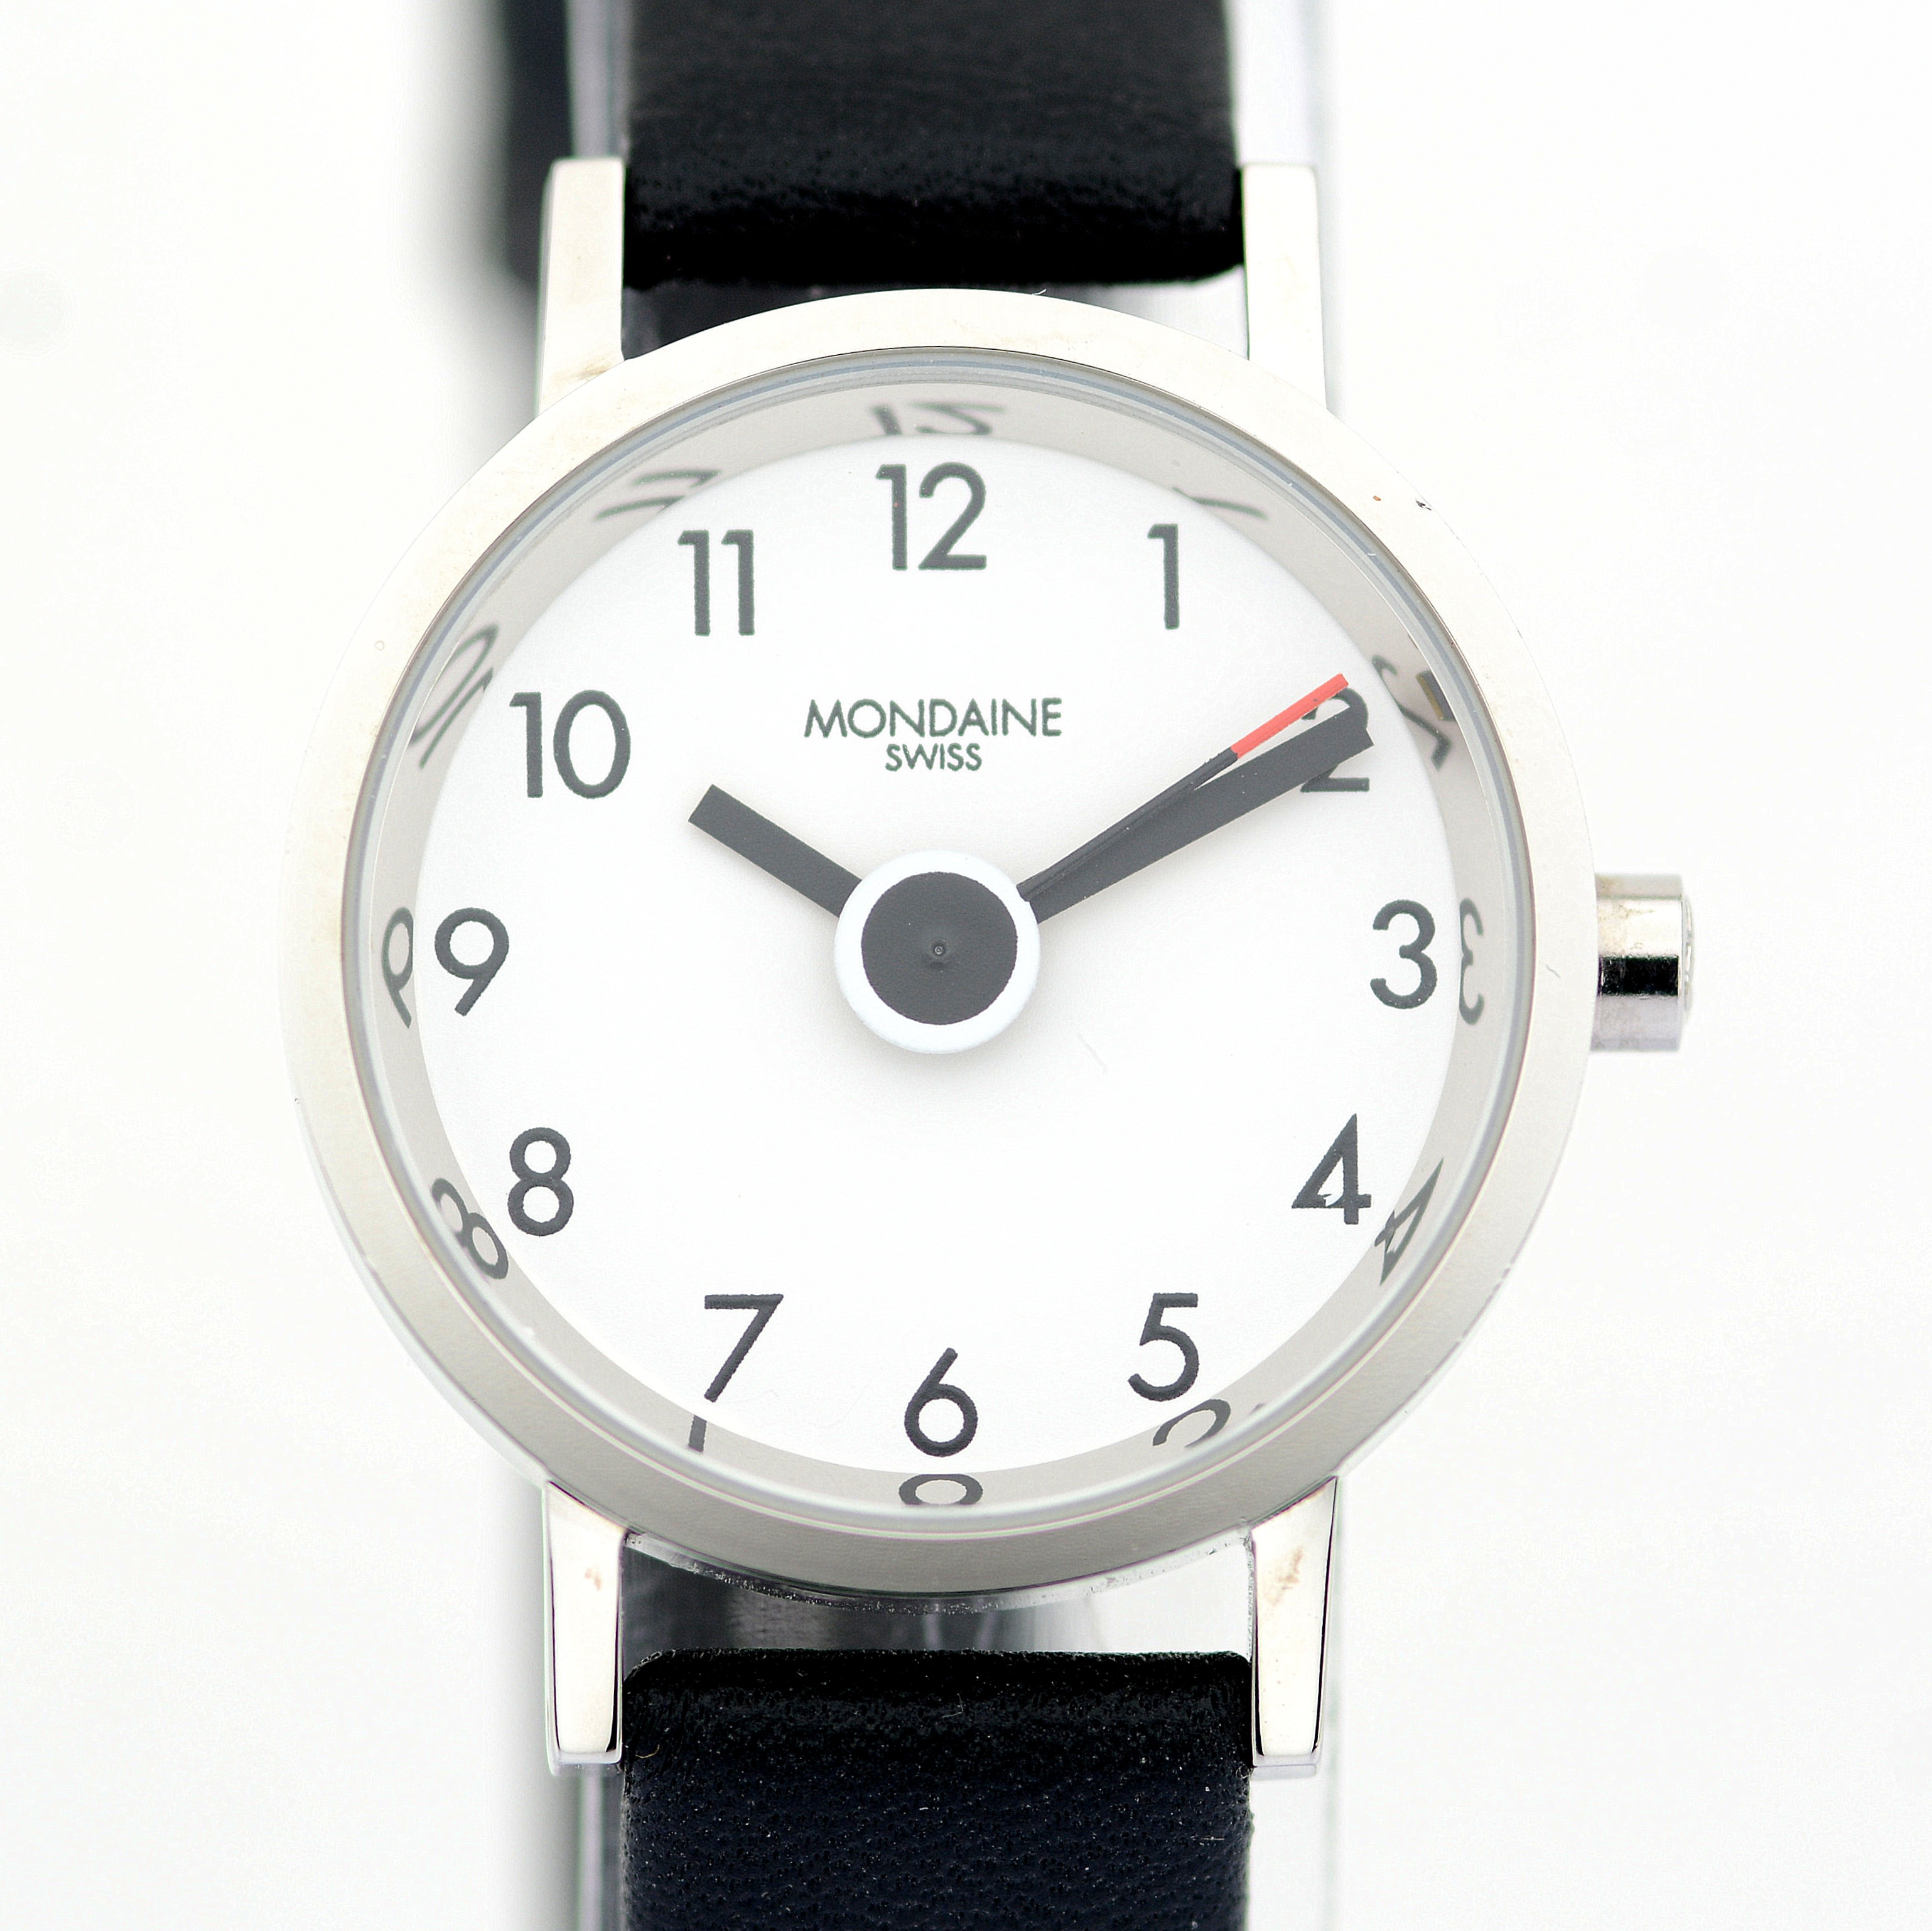 Mondaine / Swiss Designer Collection - (Unworn) Lady's Brass Wrist Watch - Image 5 of 8